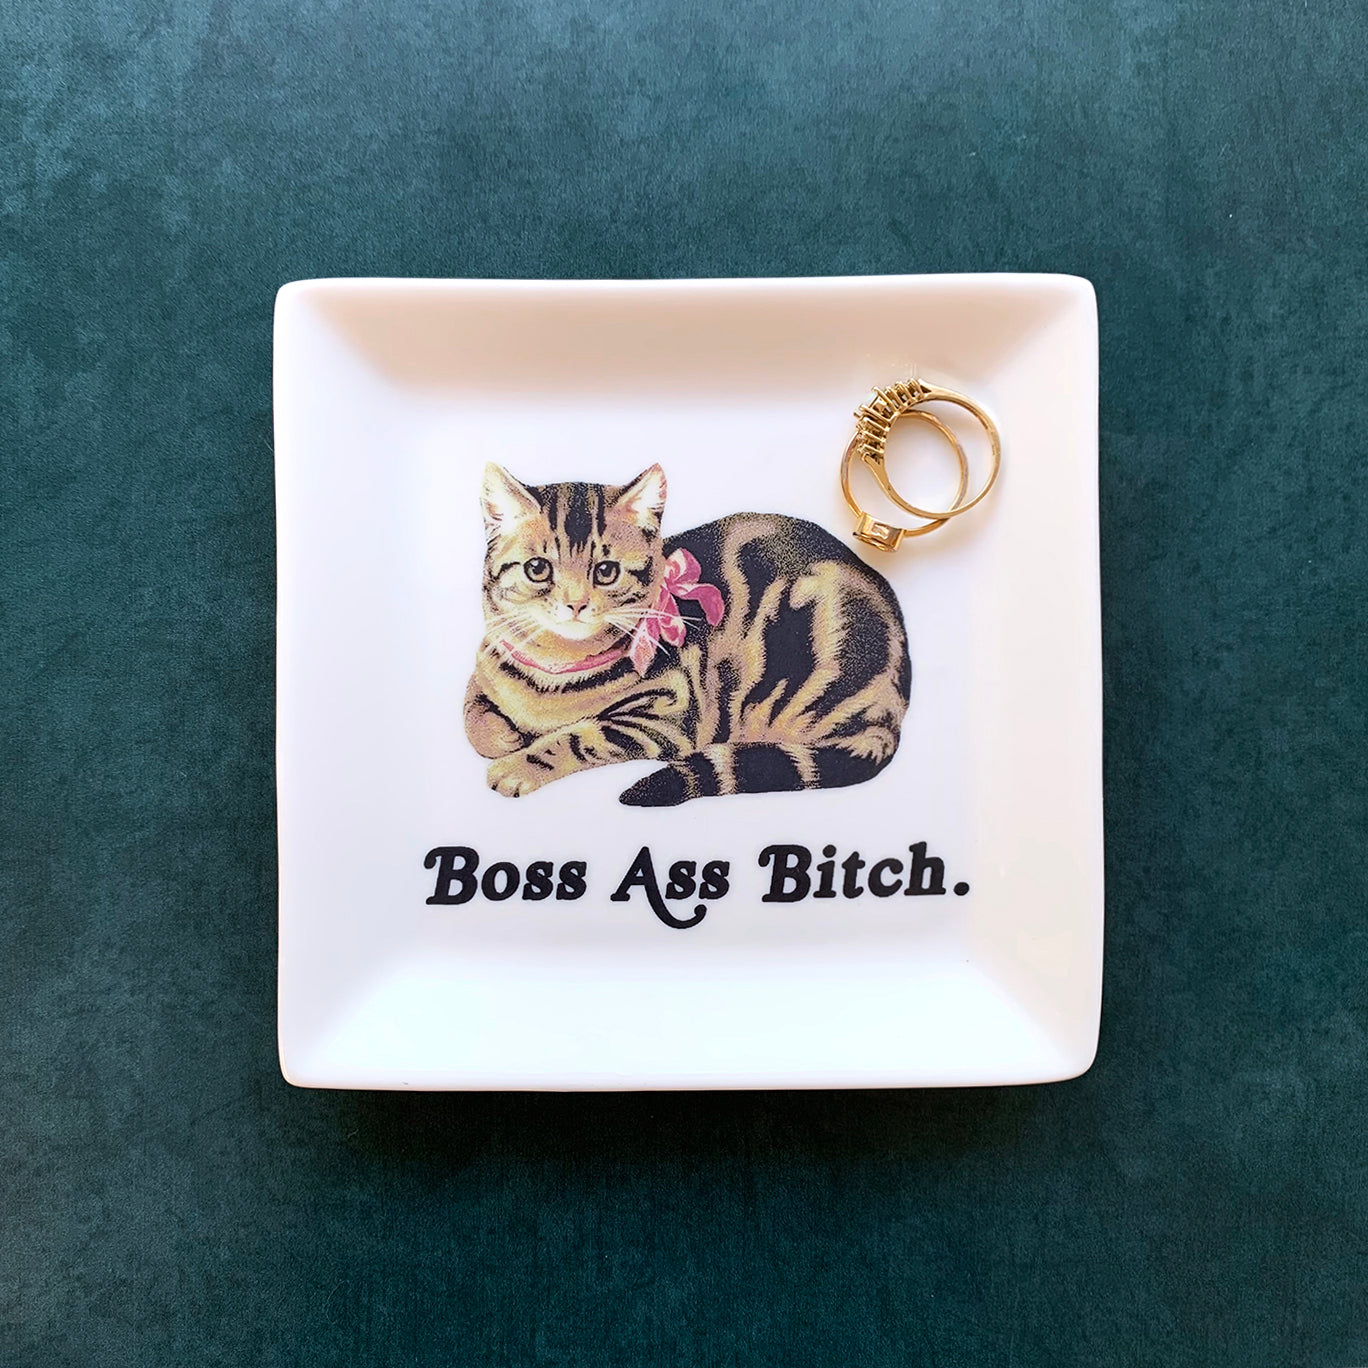 CAT TRINKET TRAY - "Boss Ass Bitch."